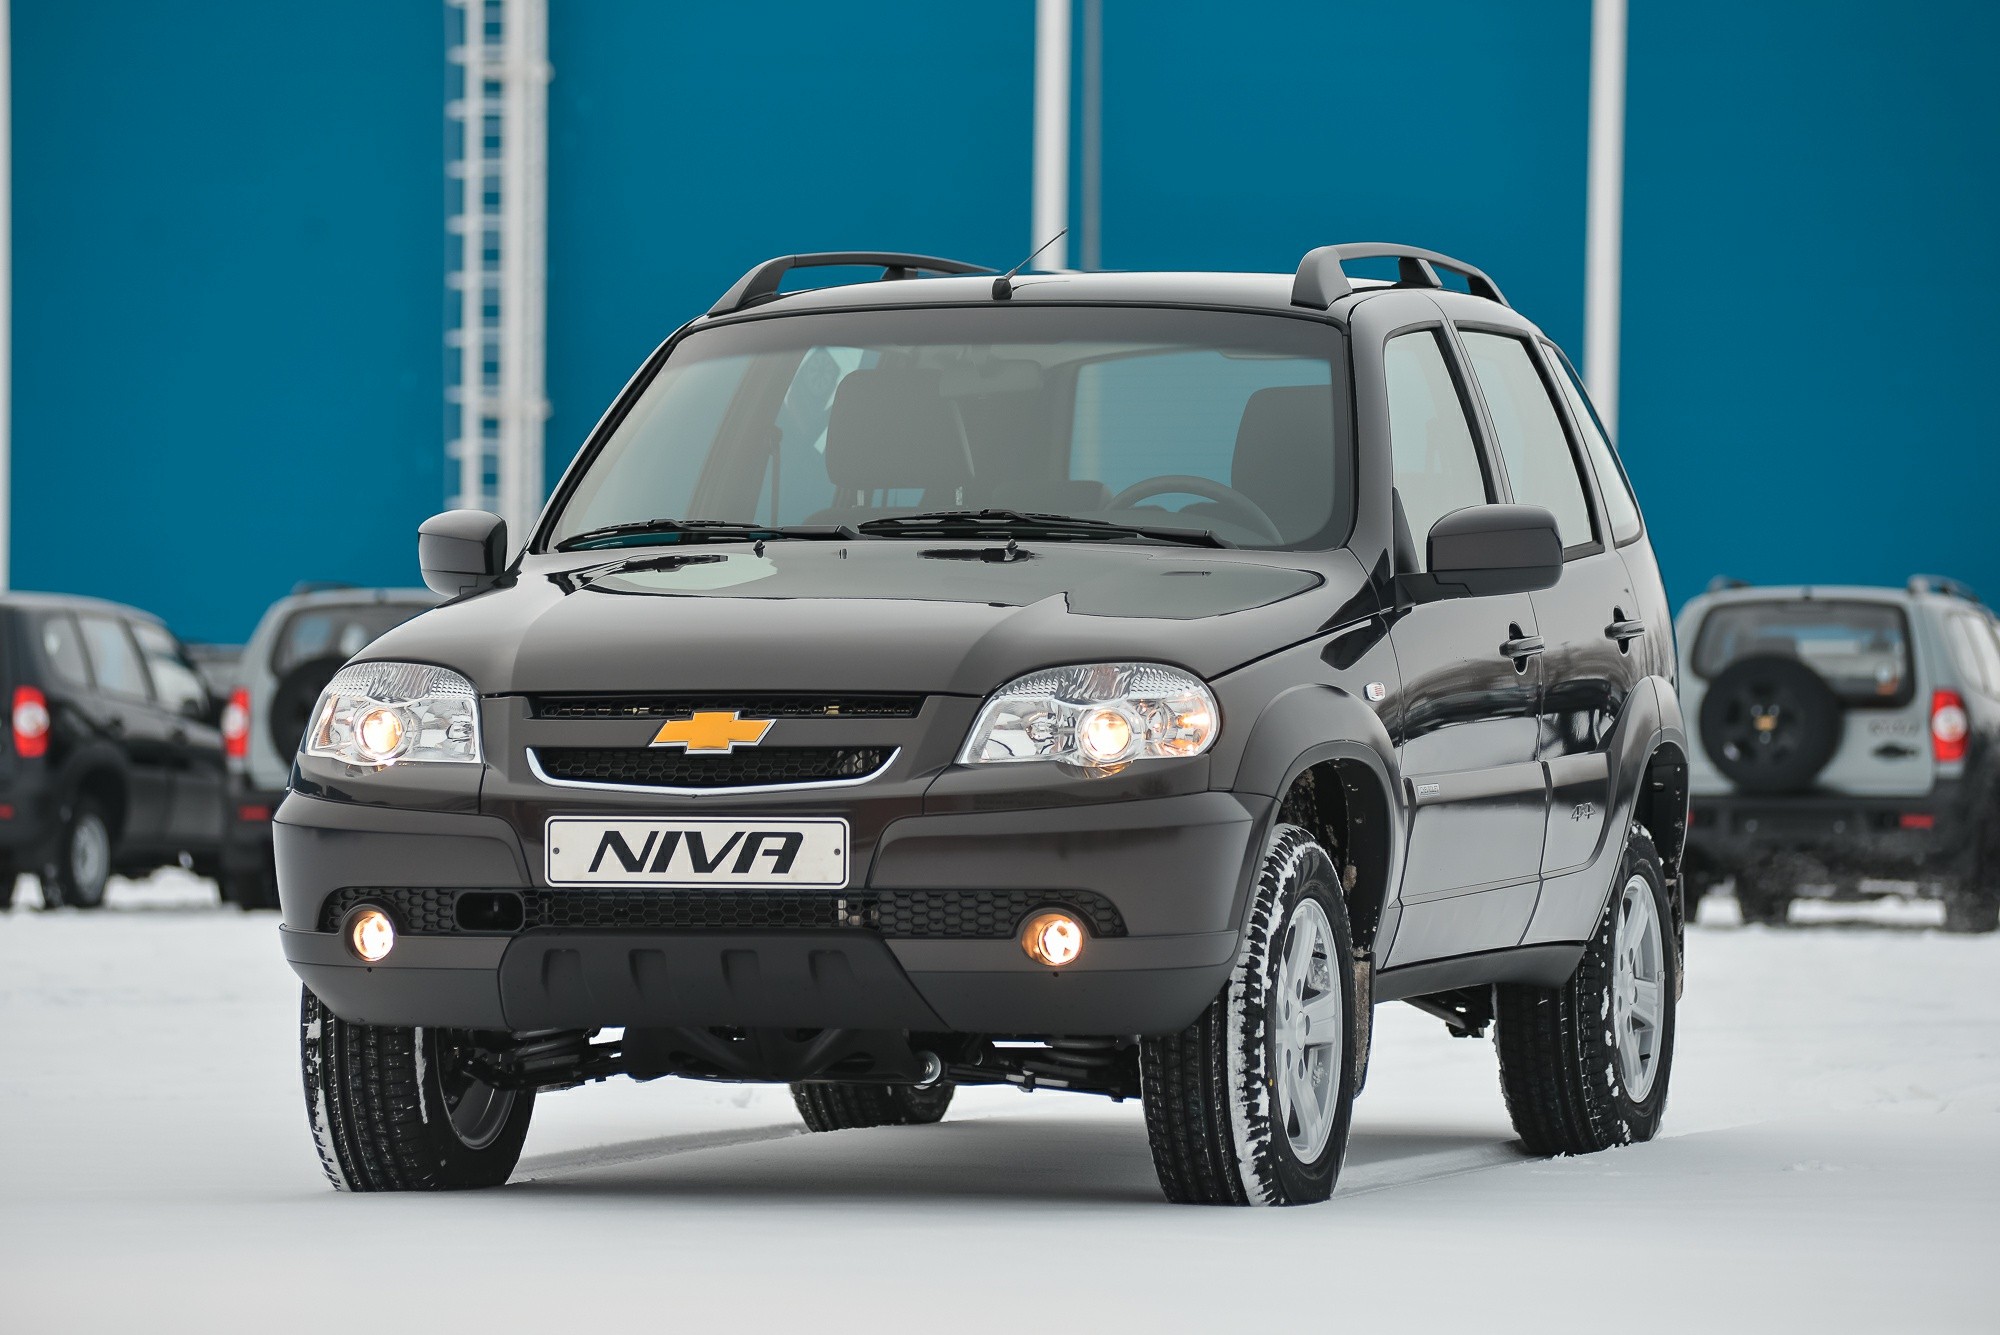 Chevrolet Niva можно купить по новым мерам поддержки автокредитования.